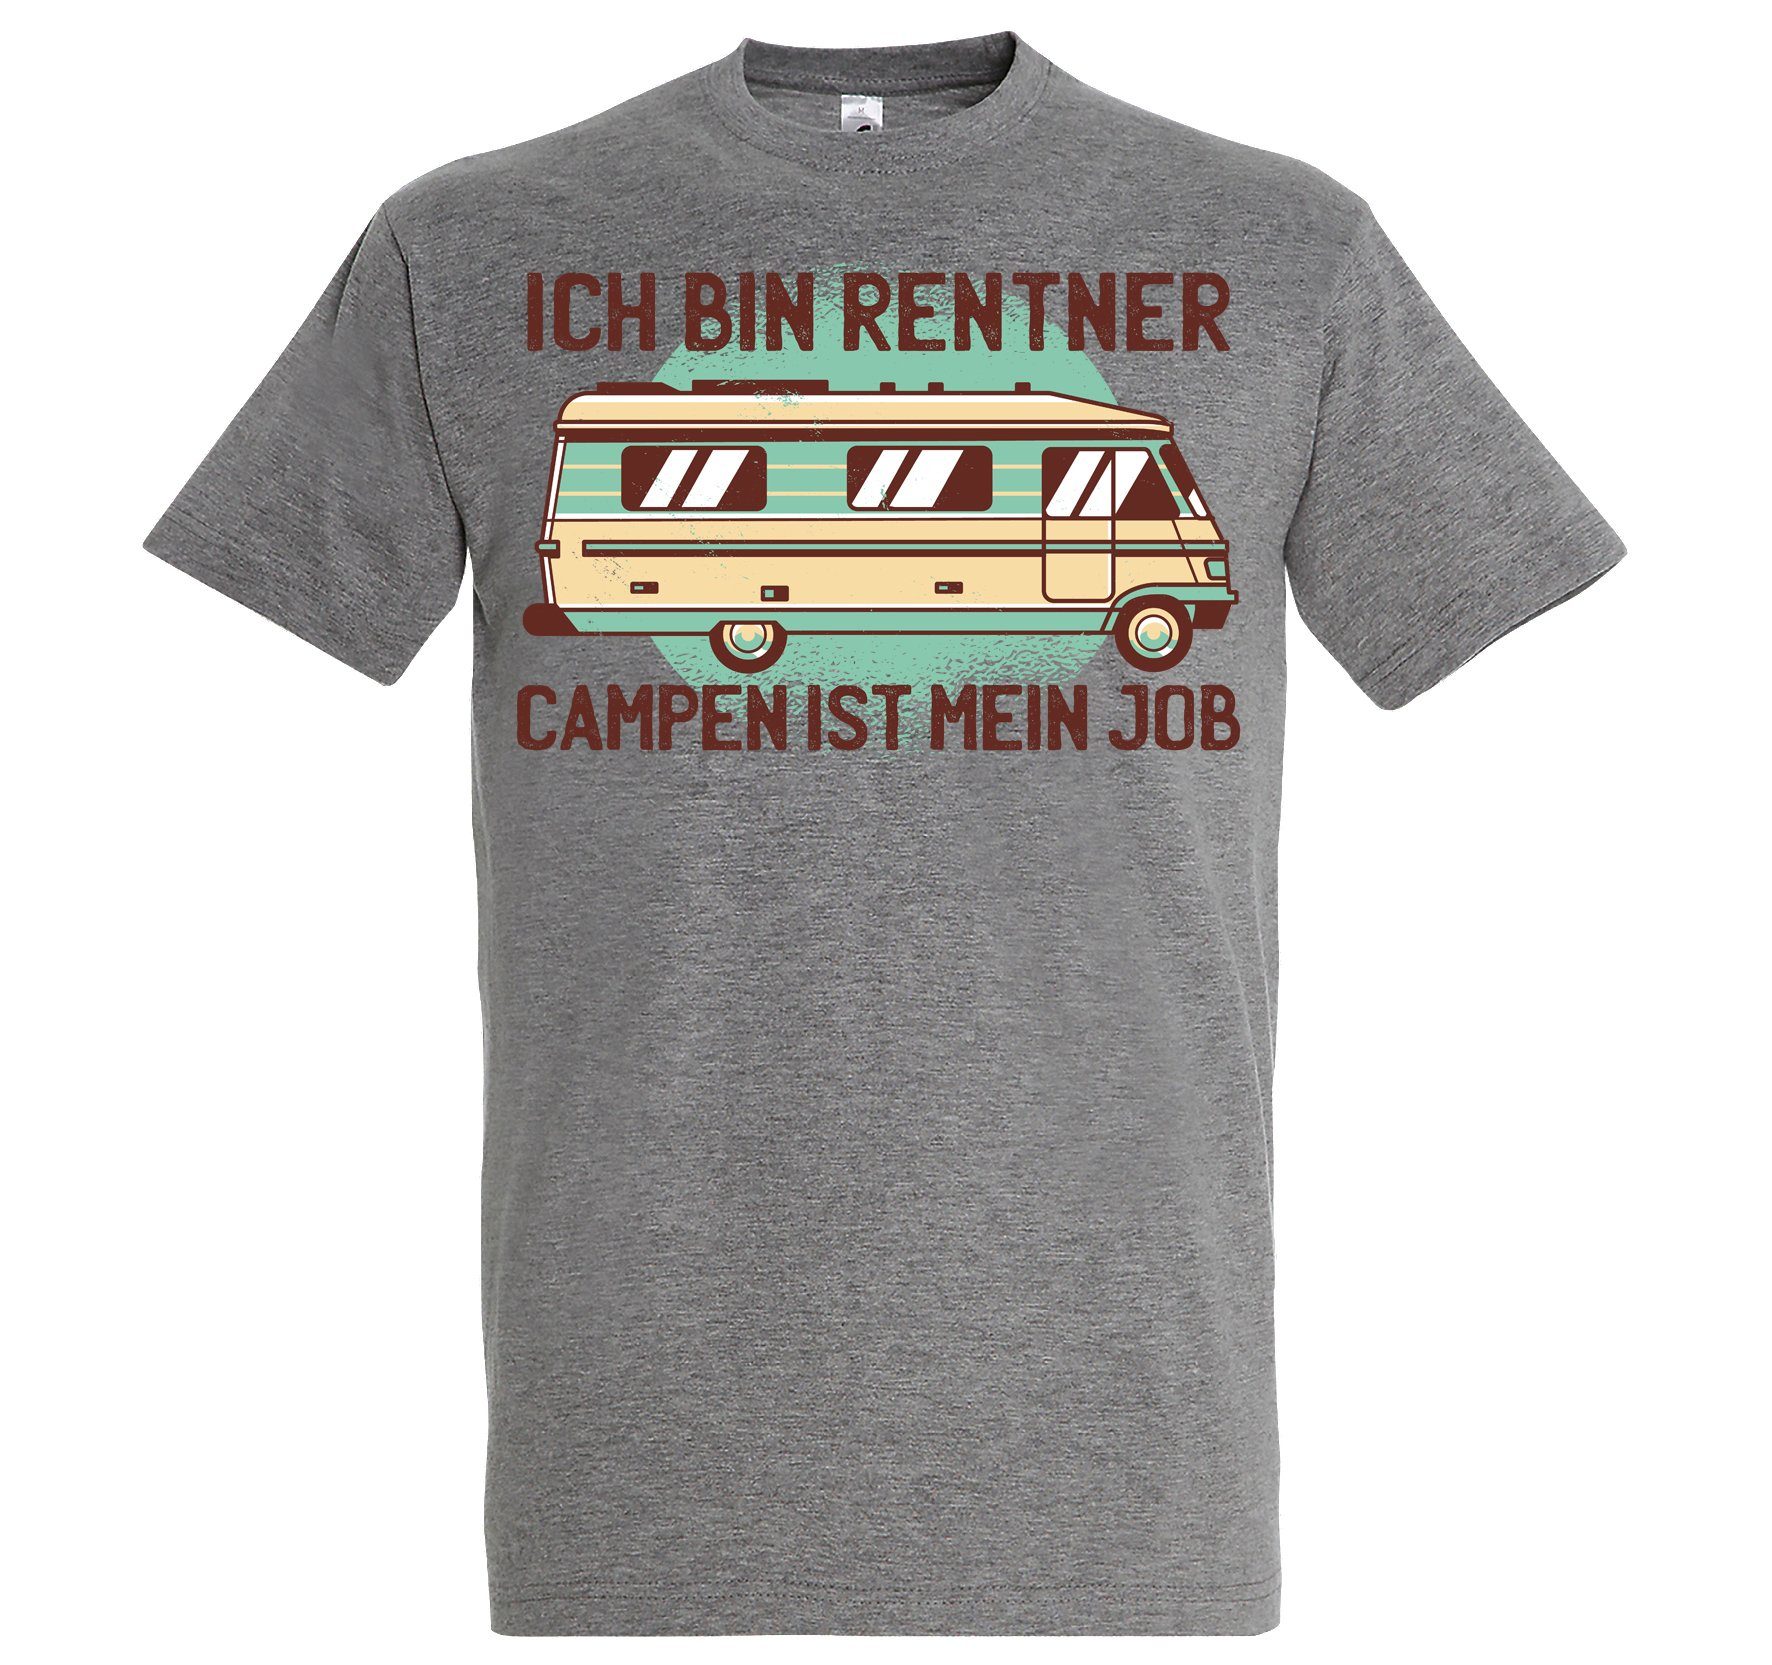 Youth Designz Herren Grau Trendigem bin Ich Frontdruck mein ist Campen Rentner T-Shirt mit Job T-Shirt